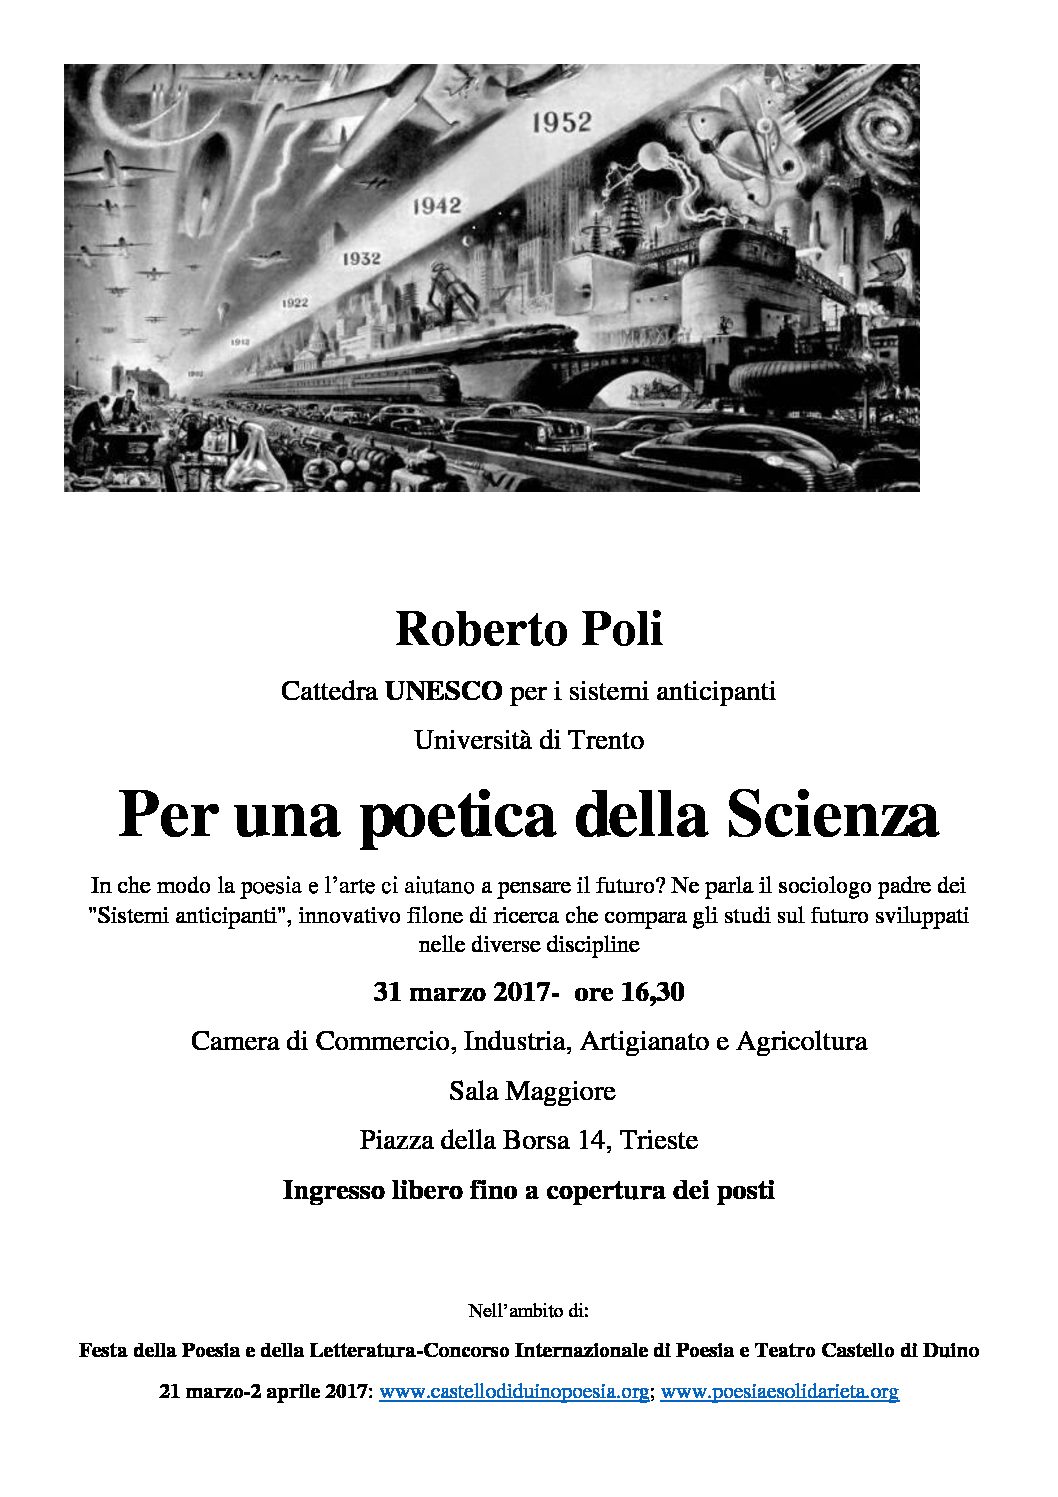 Lecture del prof. Roberto Poli cattedra UNESCO per i sistemi anticipanti